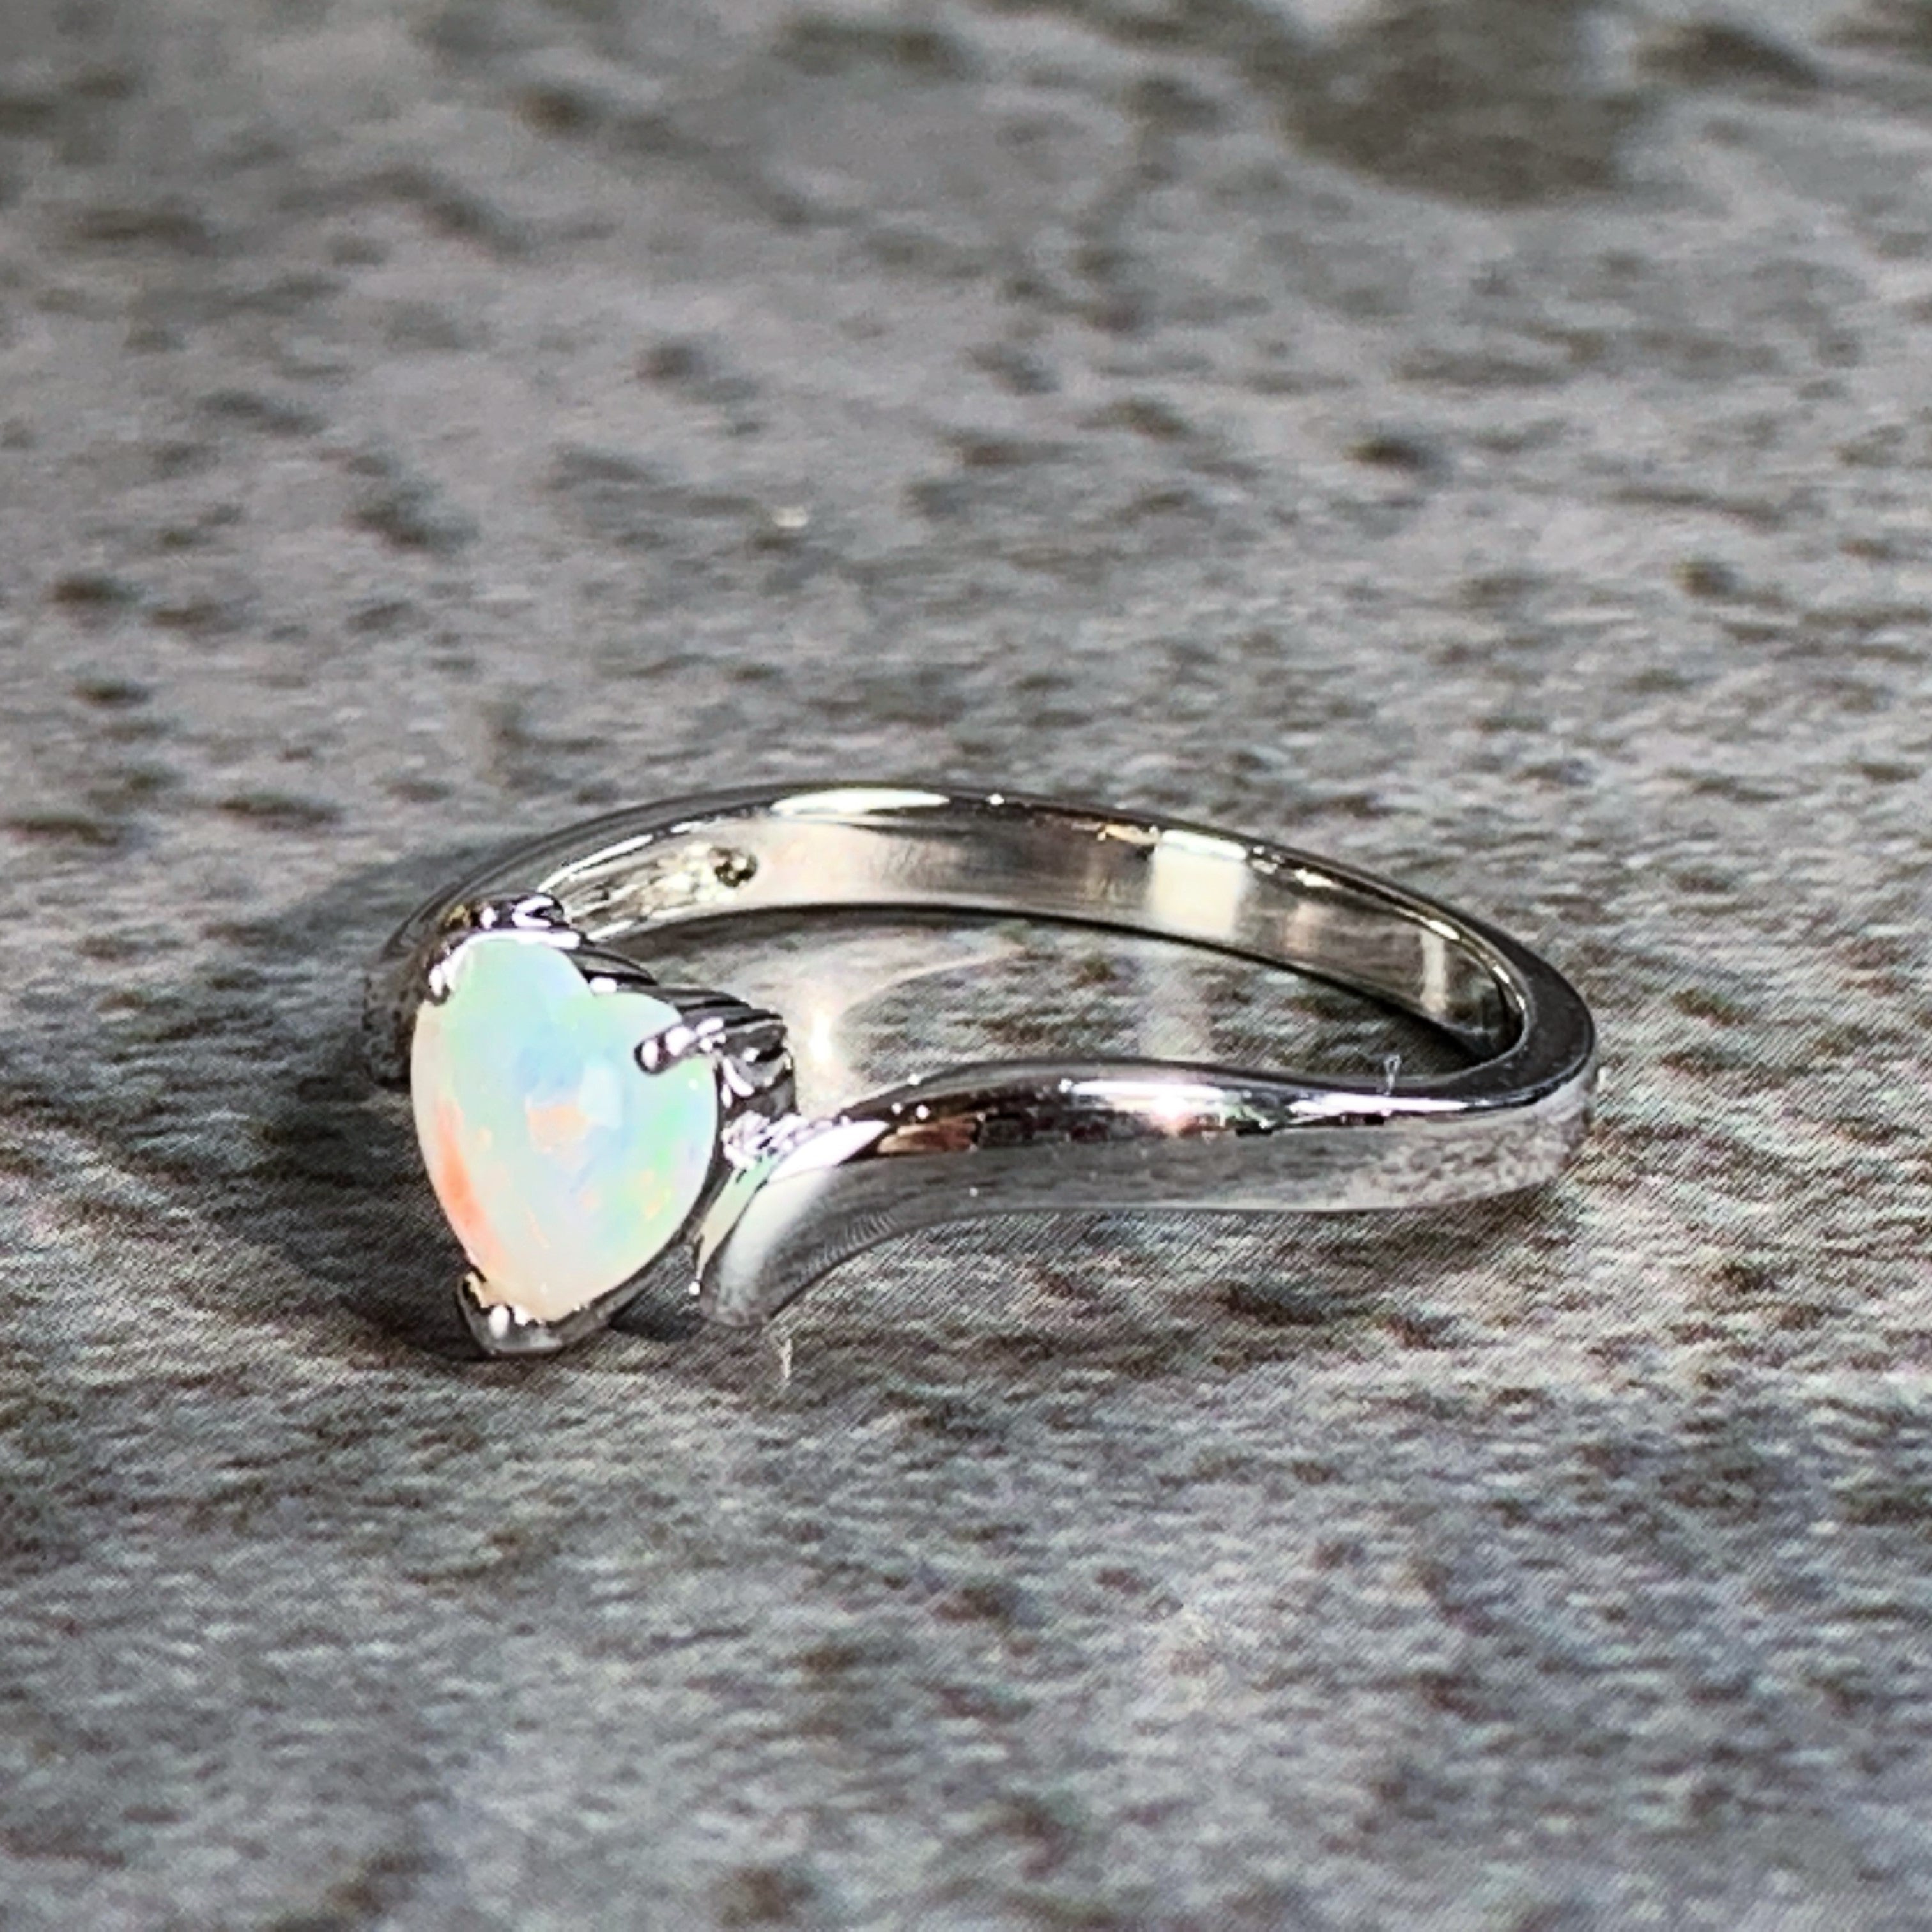 Sterling Silver 6mm Heart shape White Opal ring - Masterpiece Jewellery Opal & Gems Sydney Australia | Online Shop